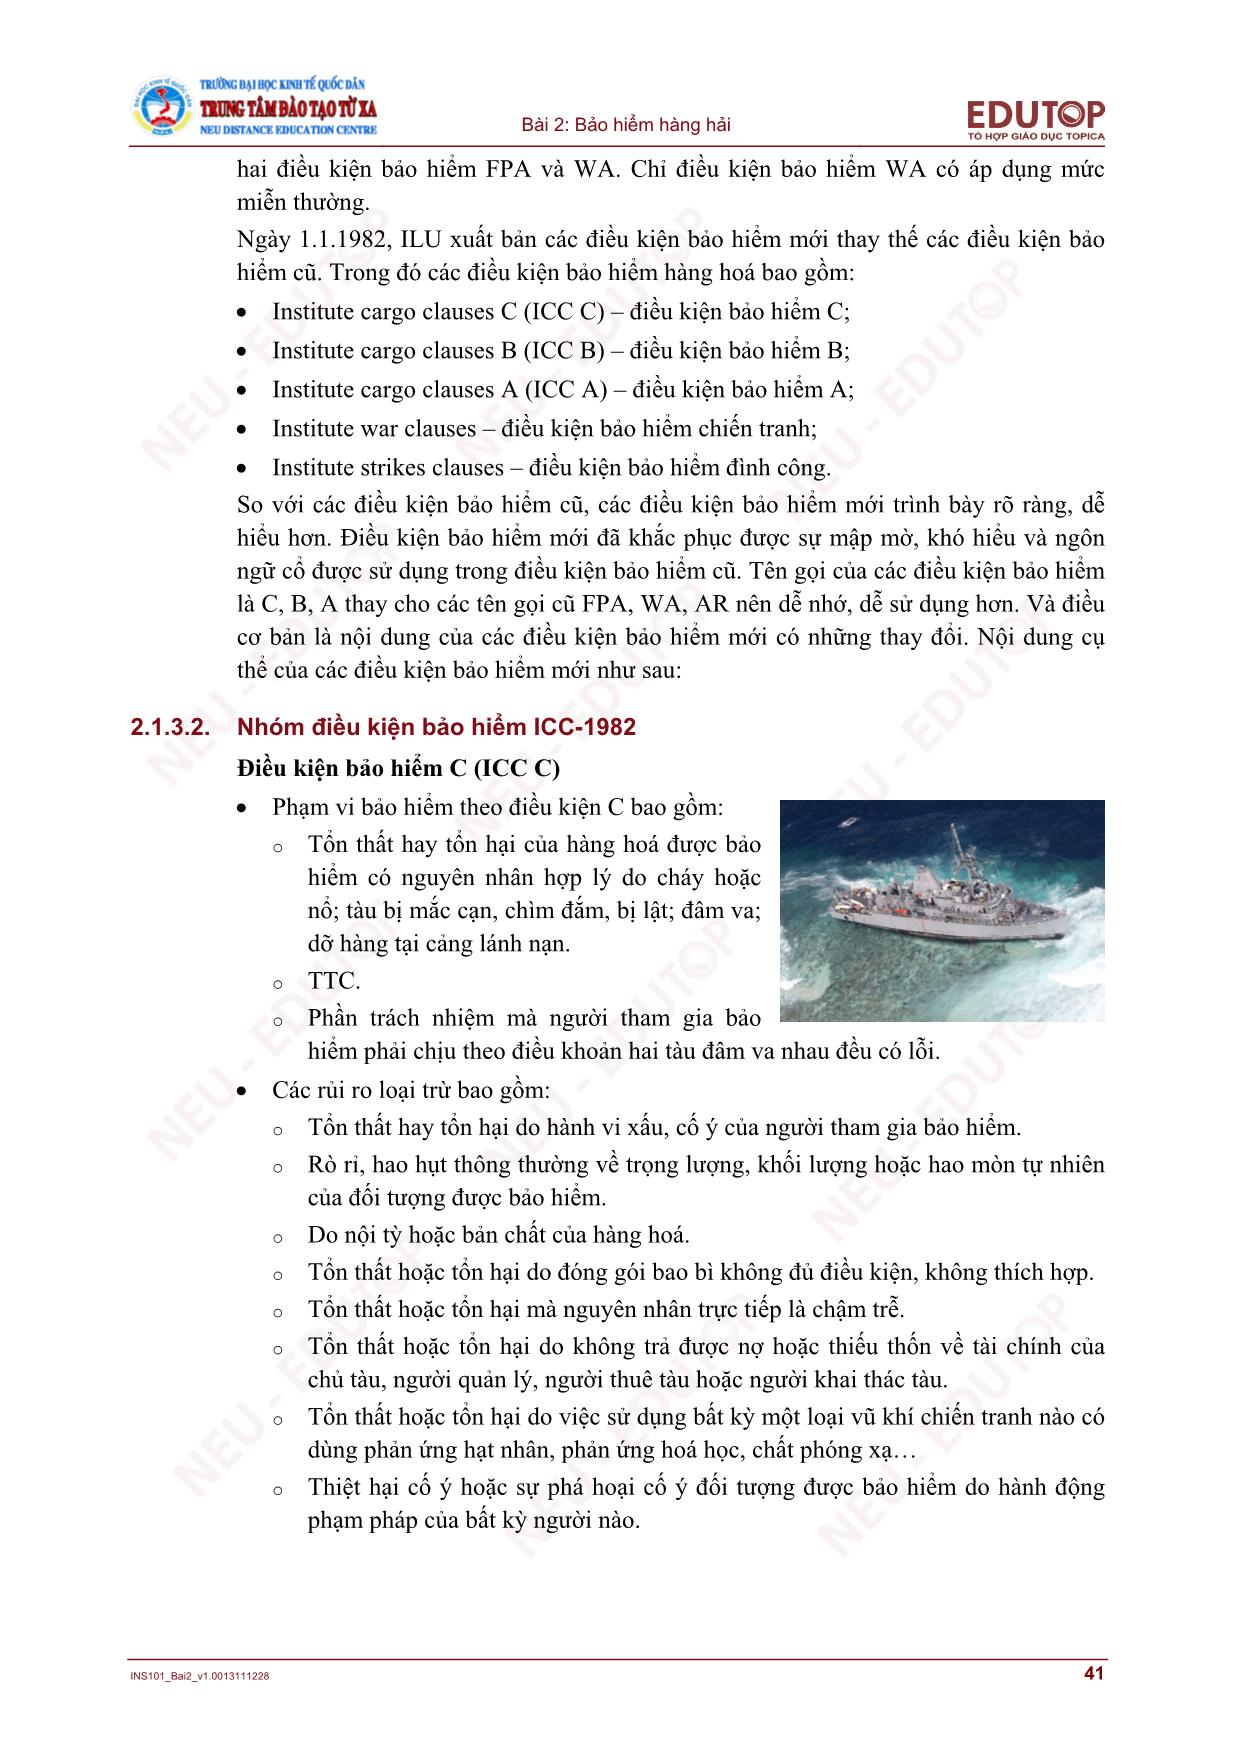 Bài giảng Bảo hiểm thương mại - Bài 2, Phần 2: Bảo hiểm hàng hải - Nguyễn Thị Lệ Huyền trang 9